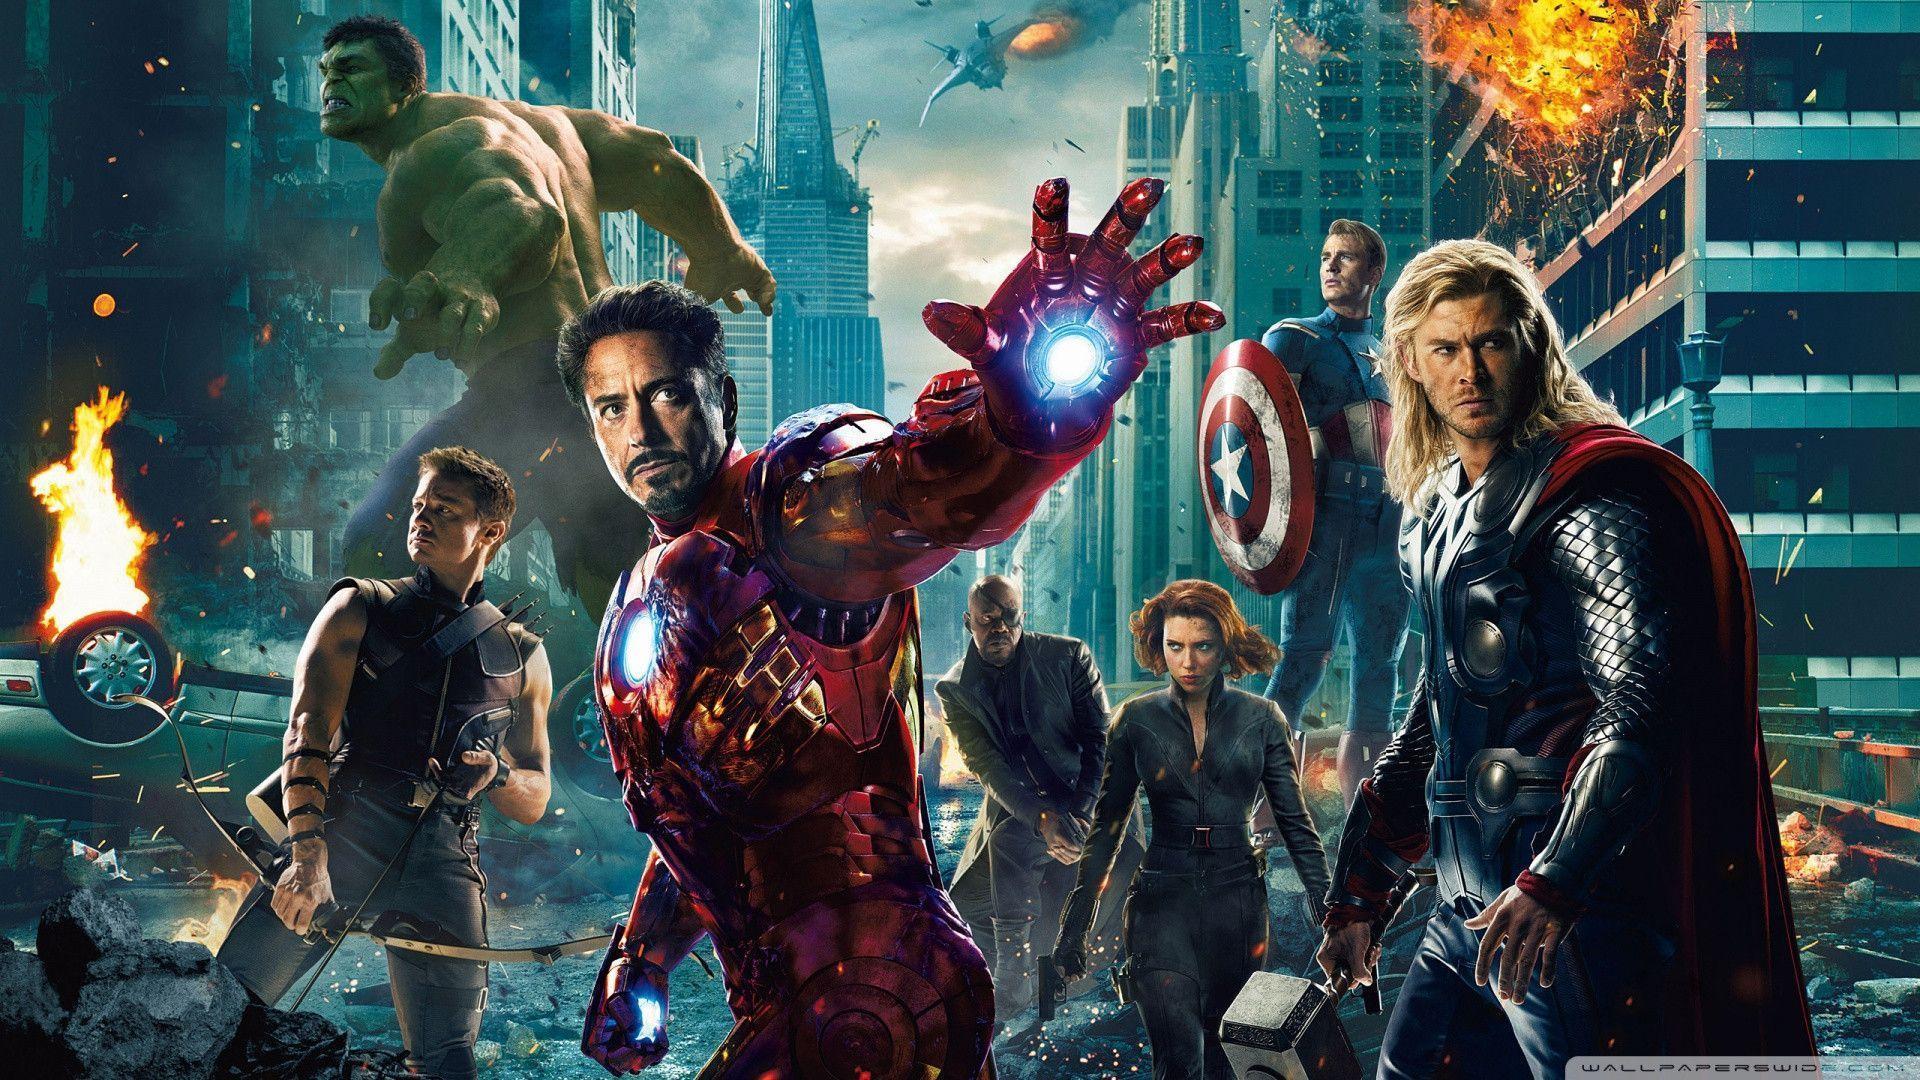 Marvel Avengers Wallpaper. The Avengers Wallpaper HD. Avengers